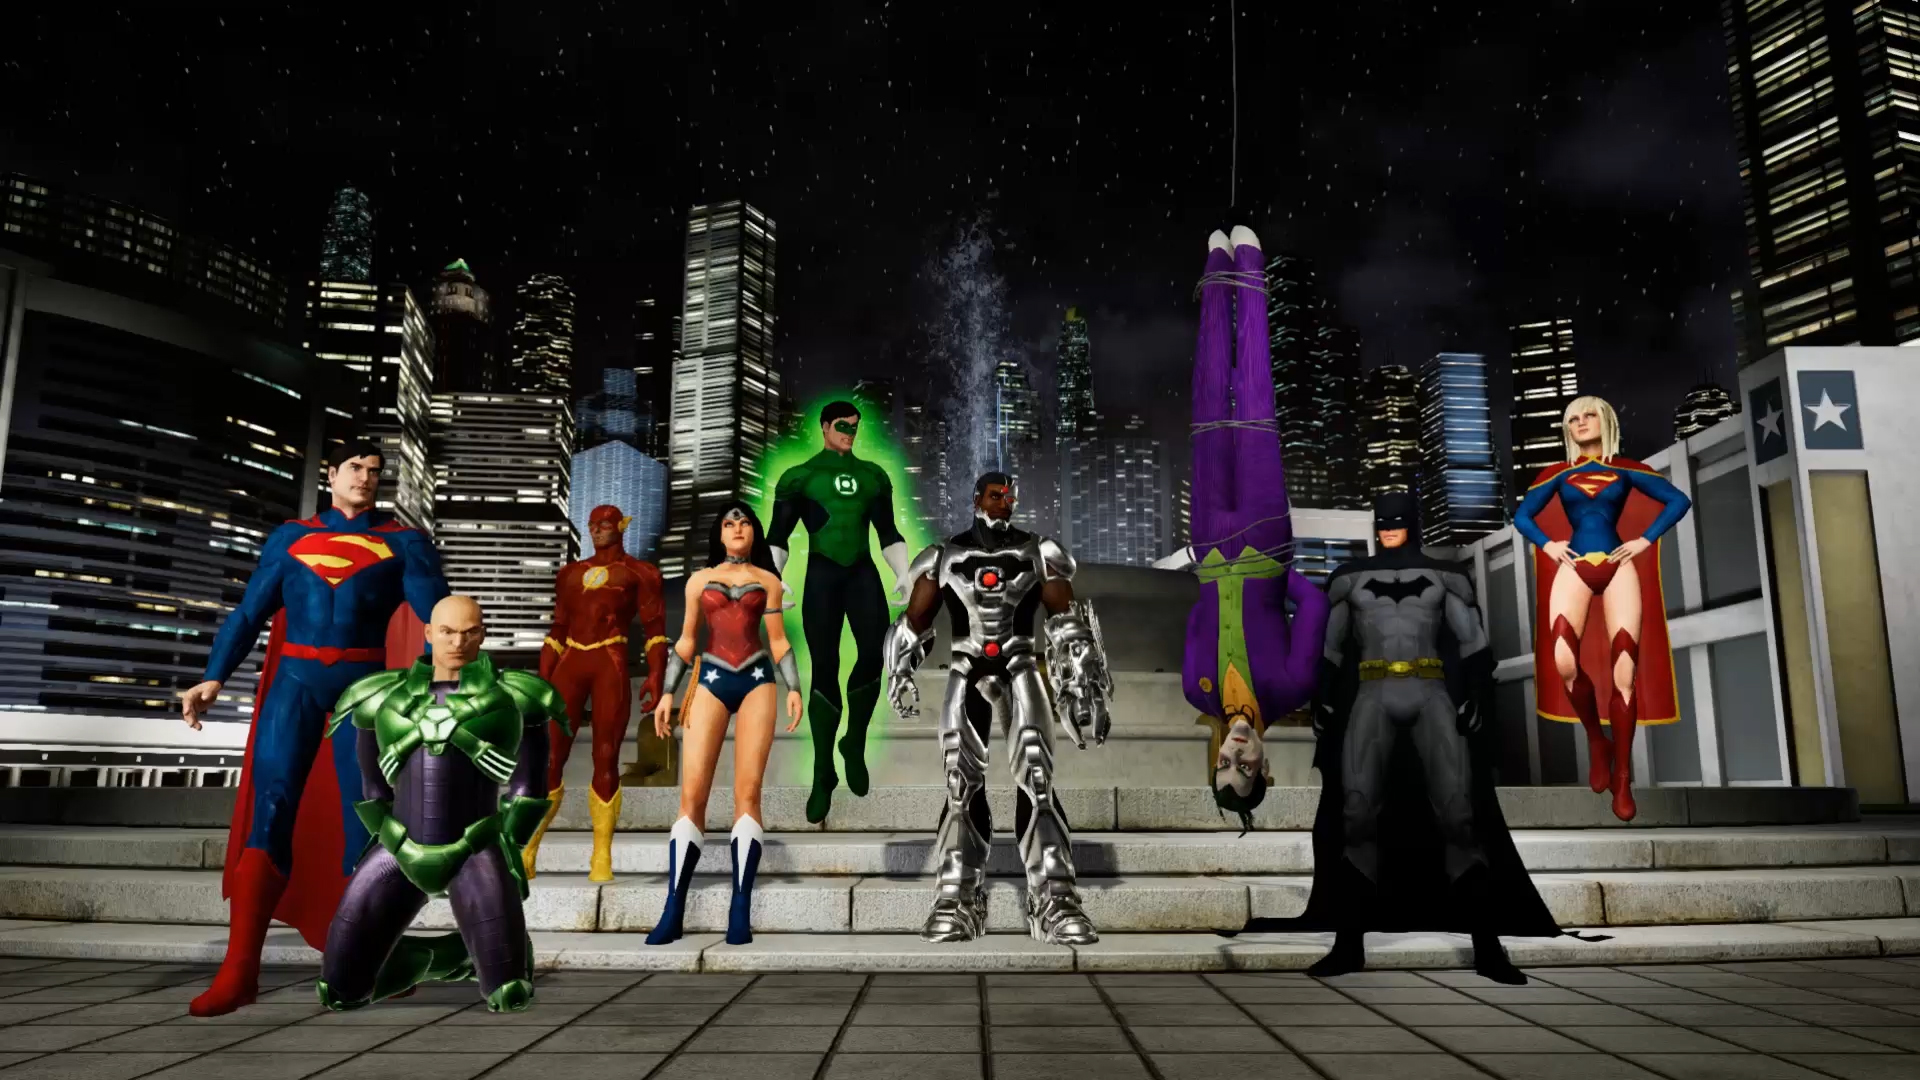 Six Flags’ Justice League: Battle for Metropolis